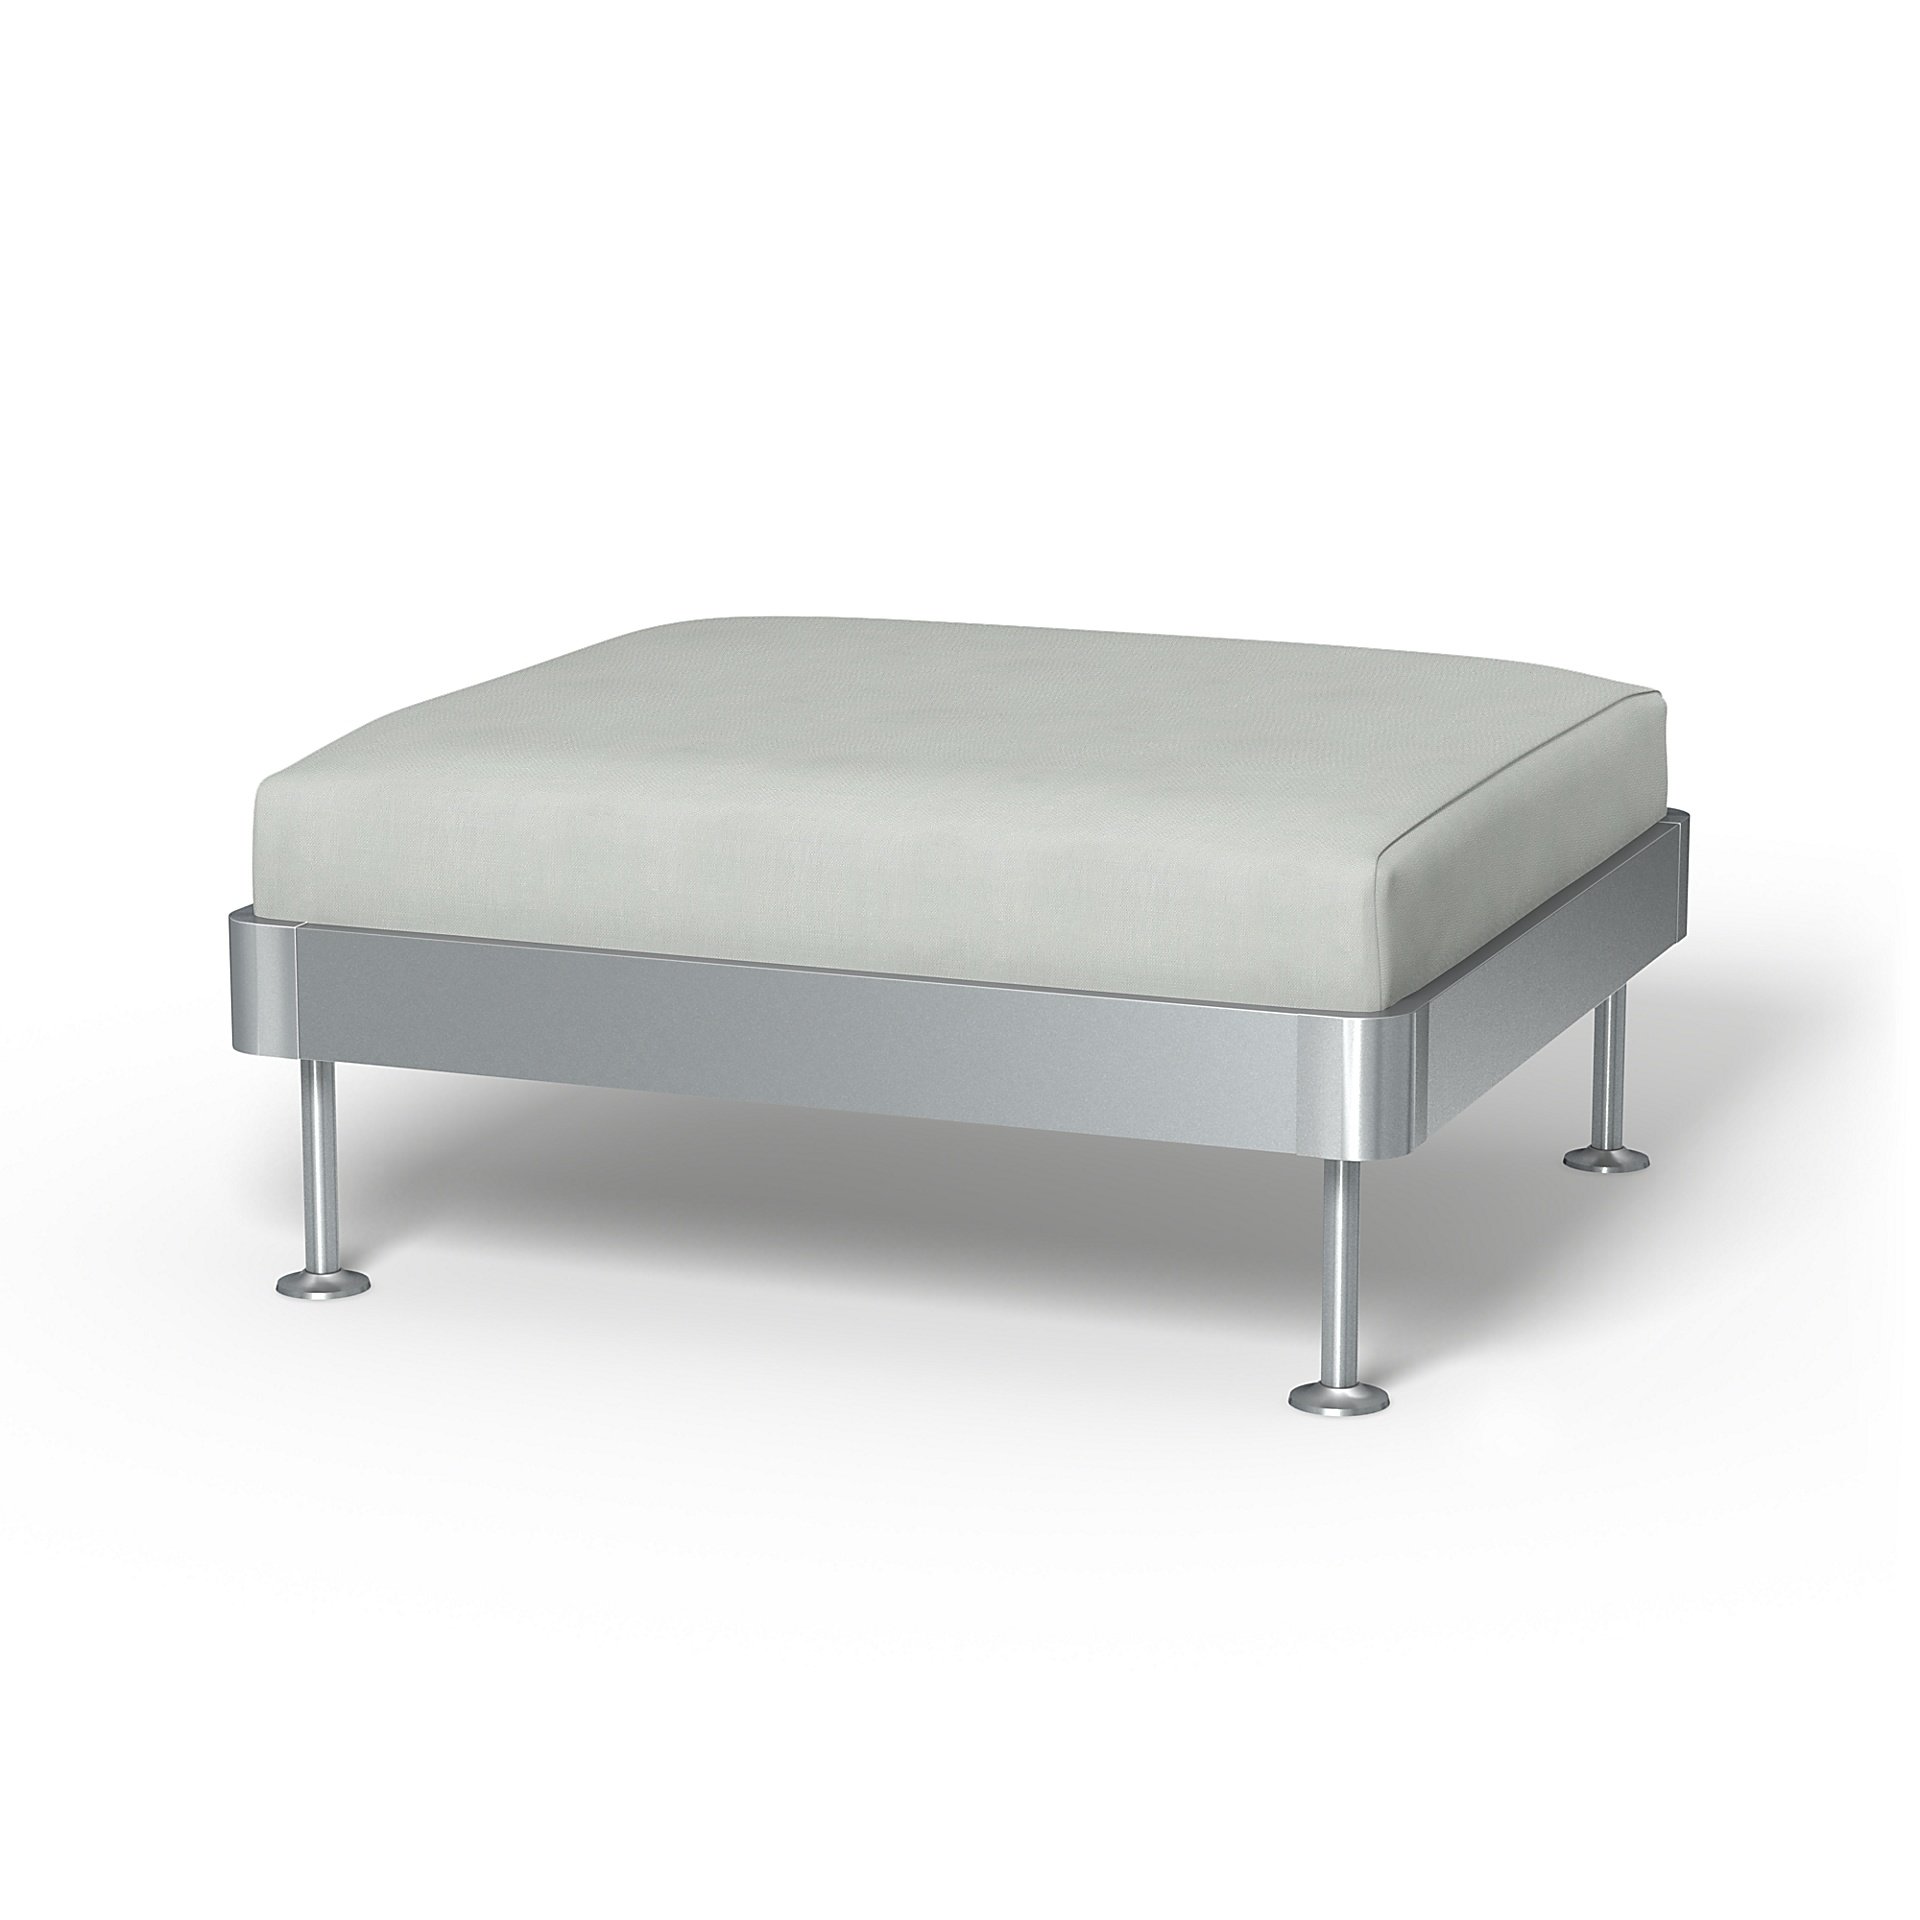 IKEA - Delaktig 1 Seat Platform Cover, Silver Grey, Linen - Bemz